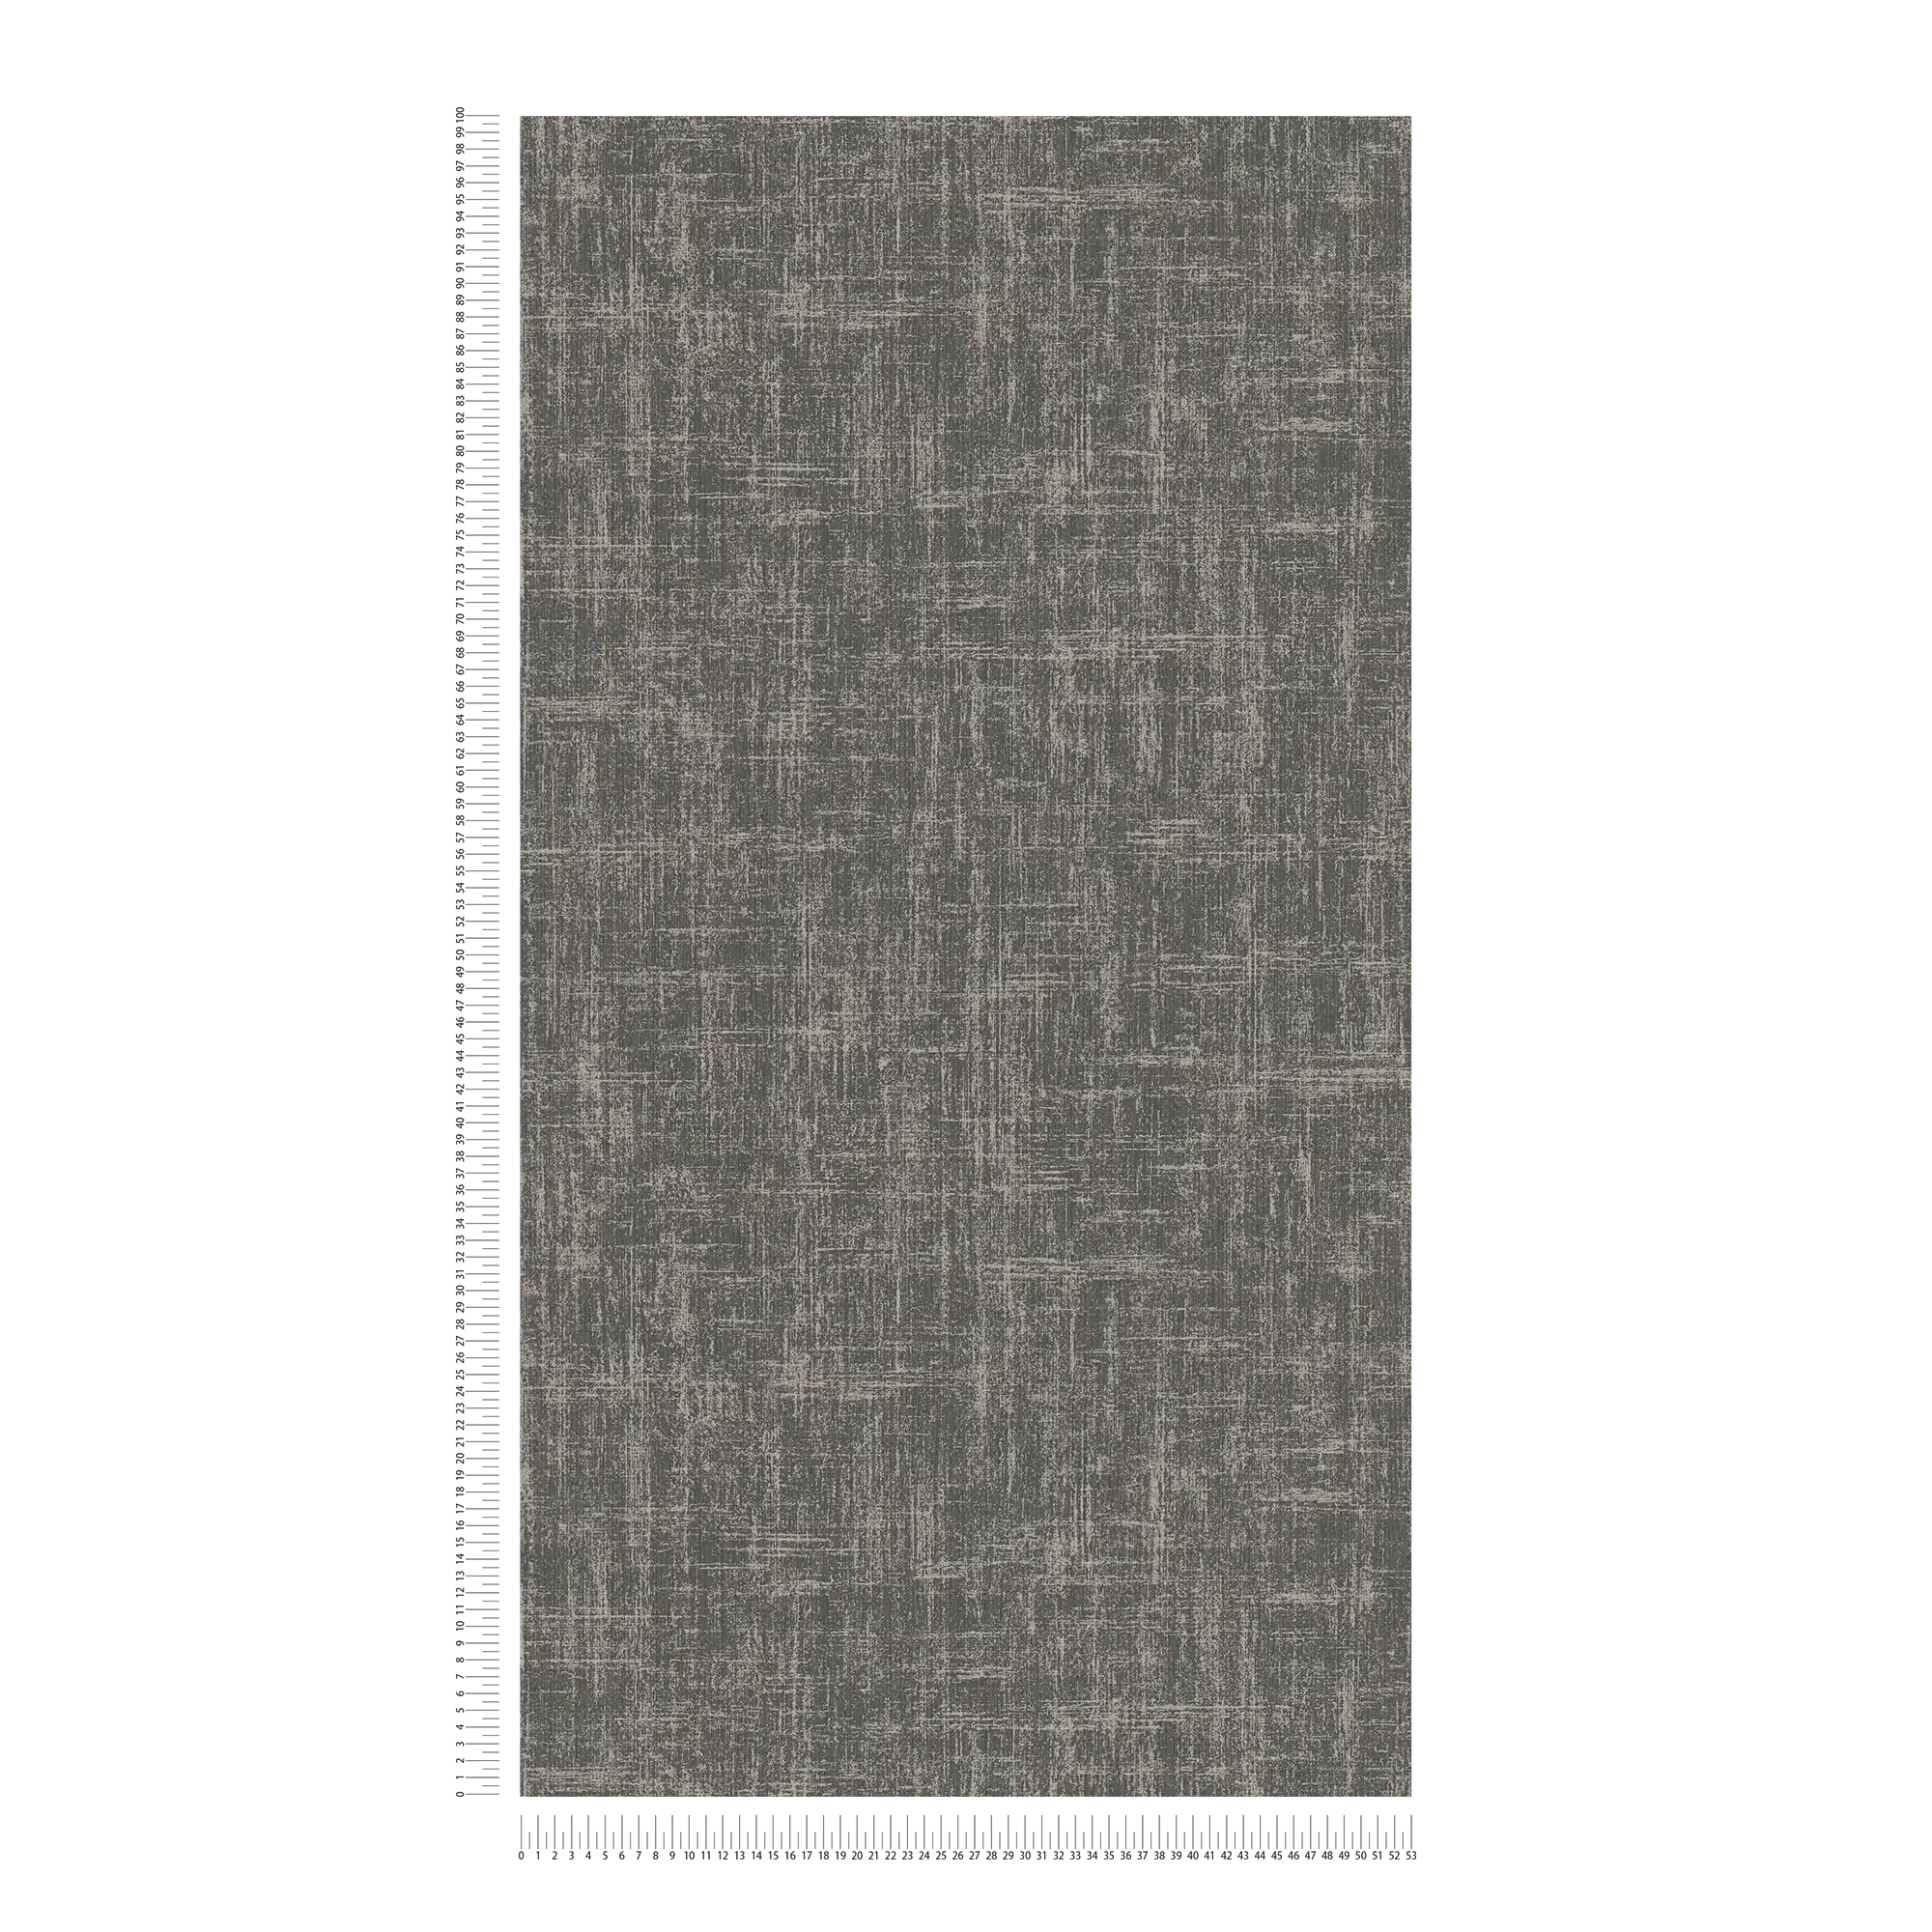             Vliesbehang met gevlekt metaaleffect - zwart, grijs
        